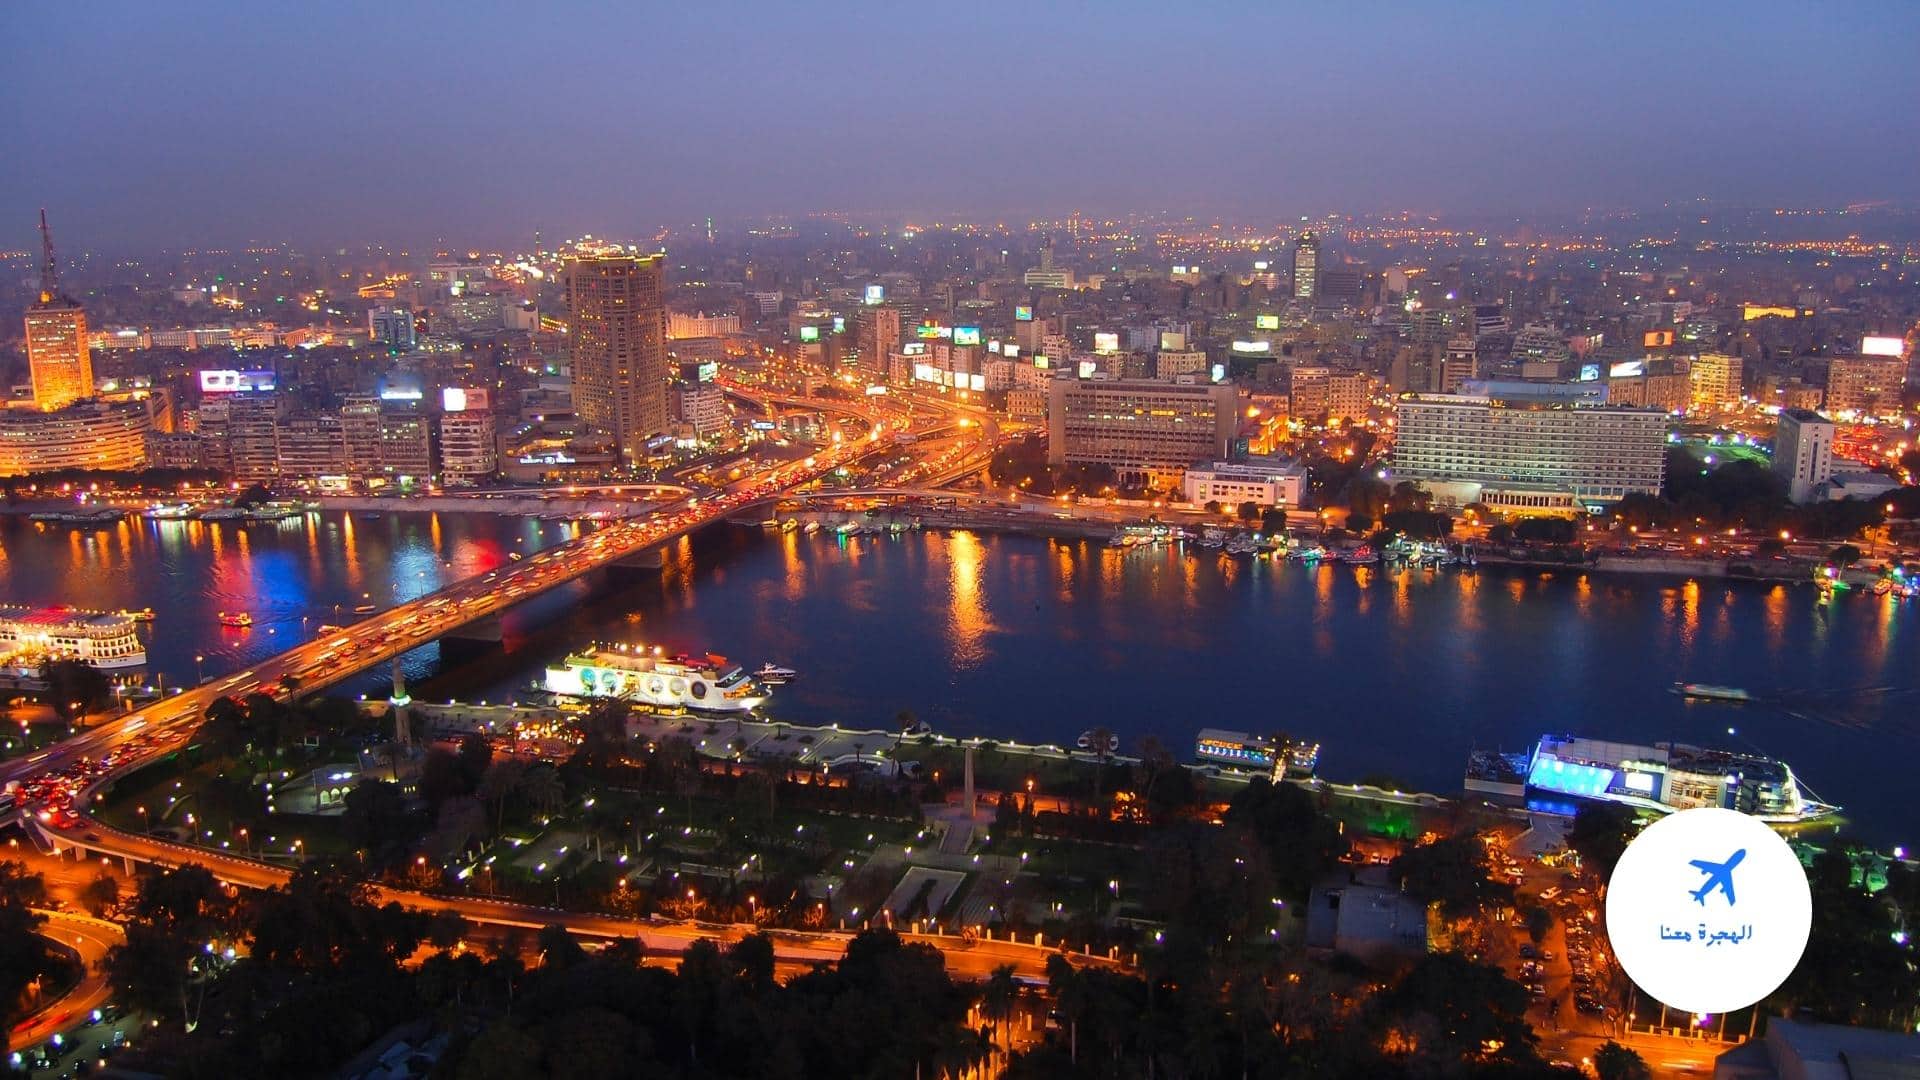 افضل الاماكن السياحية في القاهرة 7. الأسواق والمولات التقليدية في القاهرة